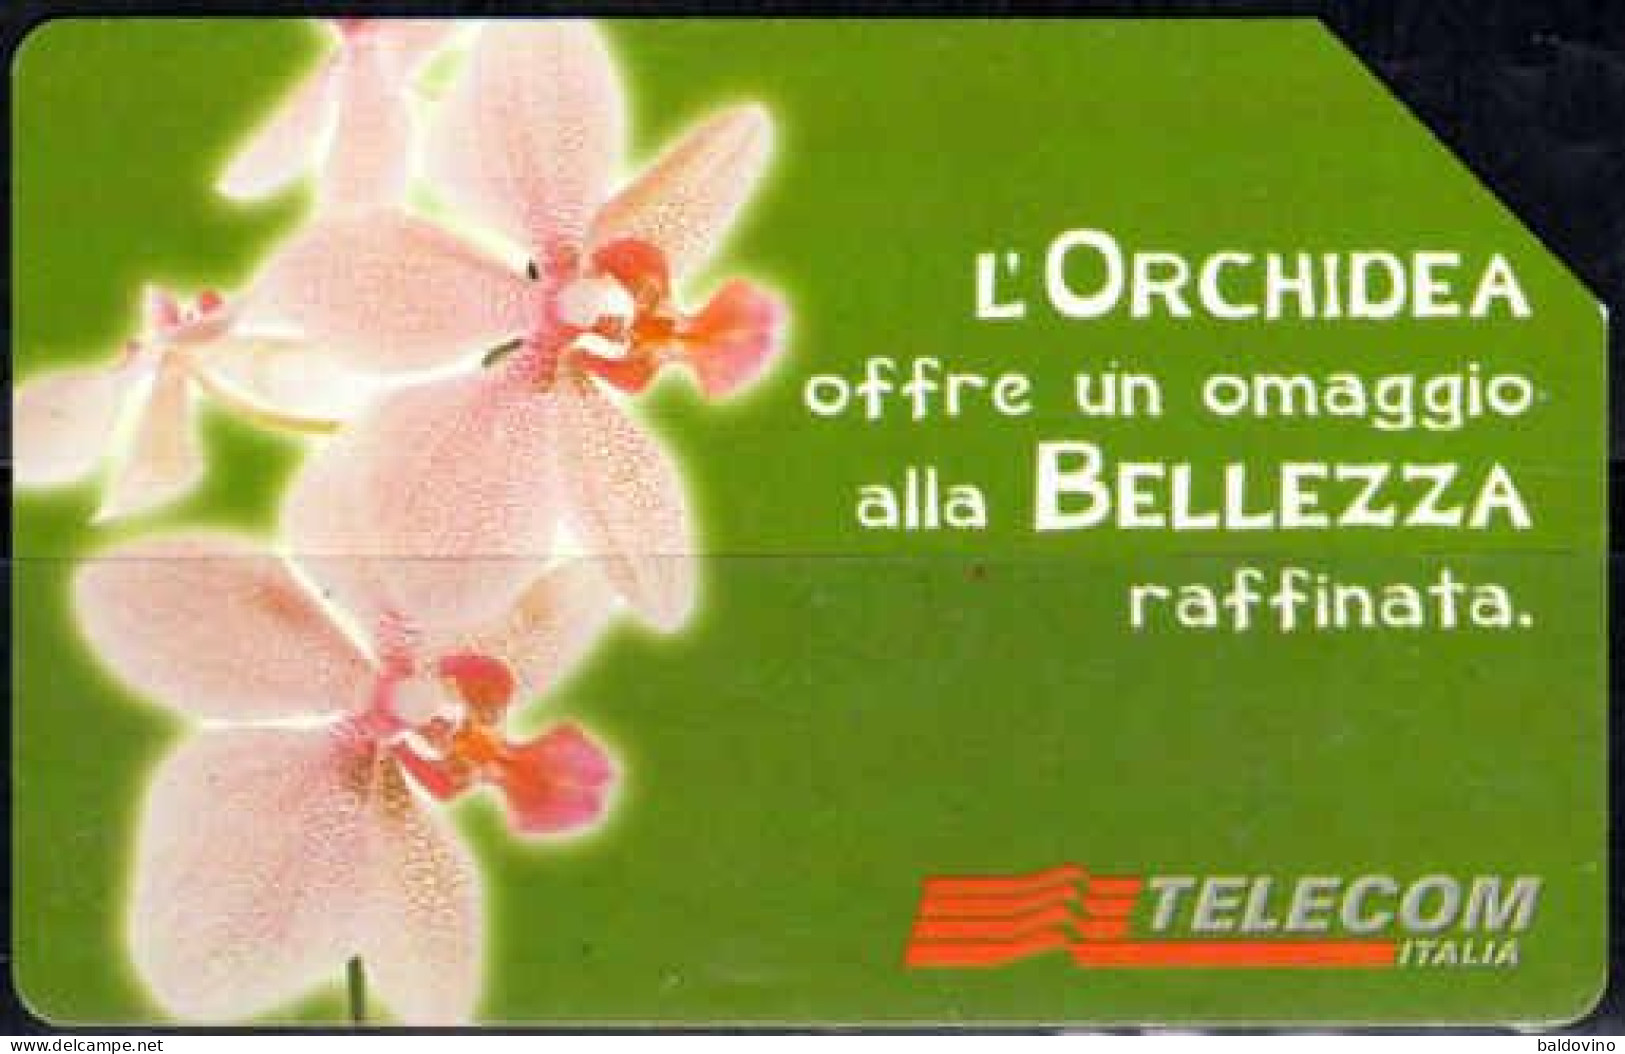 Telecom Italia 15 schede telefoniche